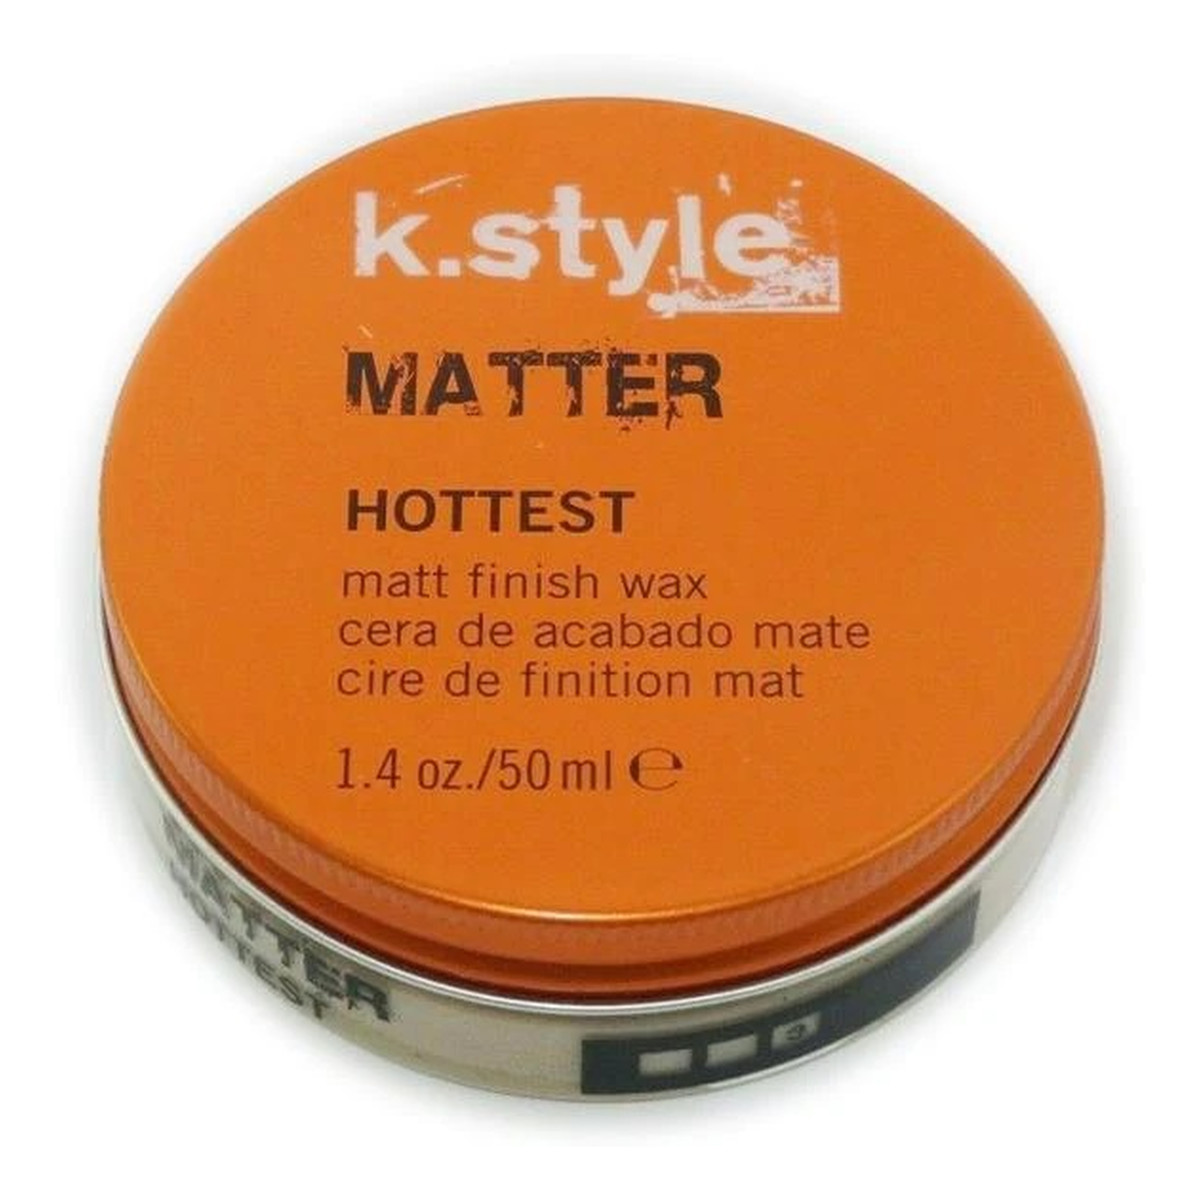 Lakme K.style matter matt finish wax elastyczny matujący wosk do stylizacji włosów 50ml